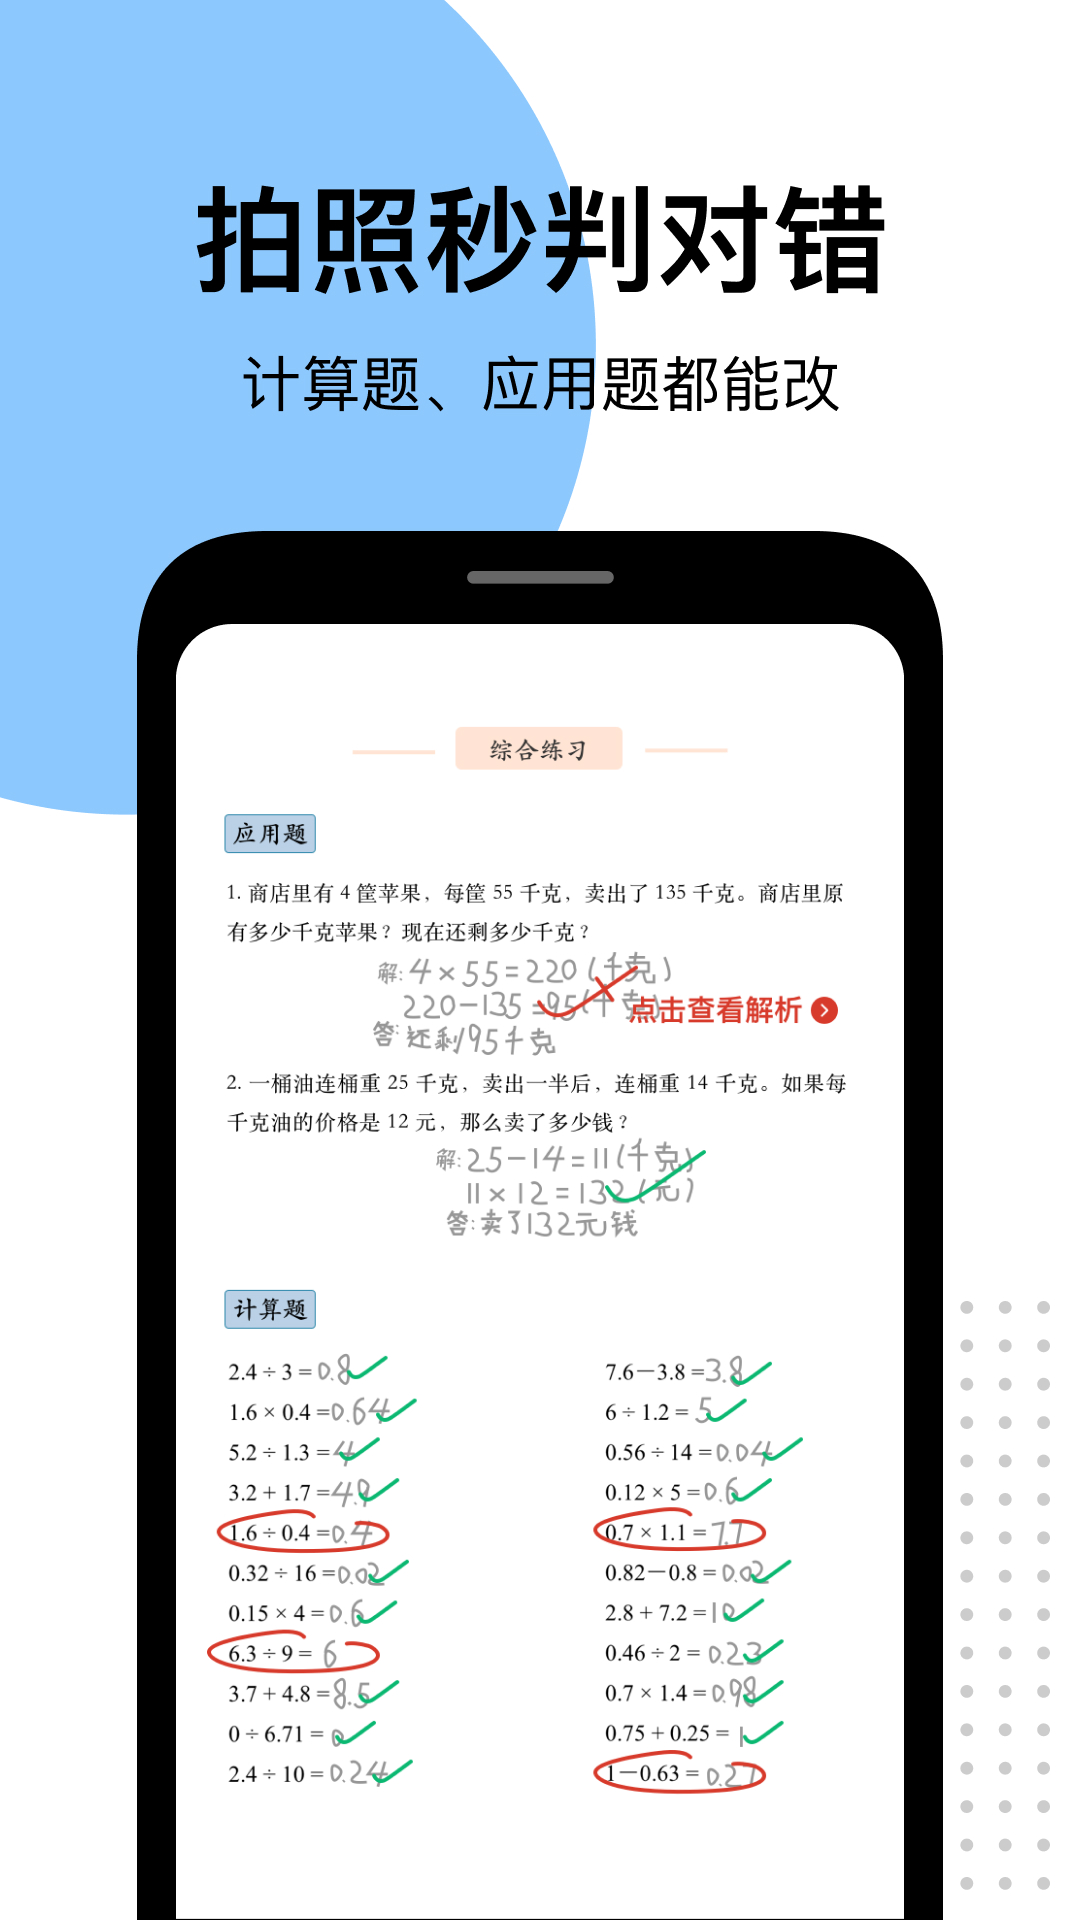 爱作业app快速批改作业5